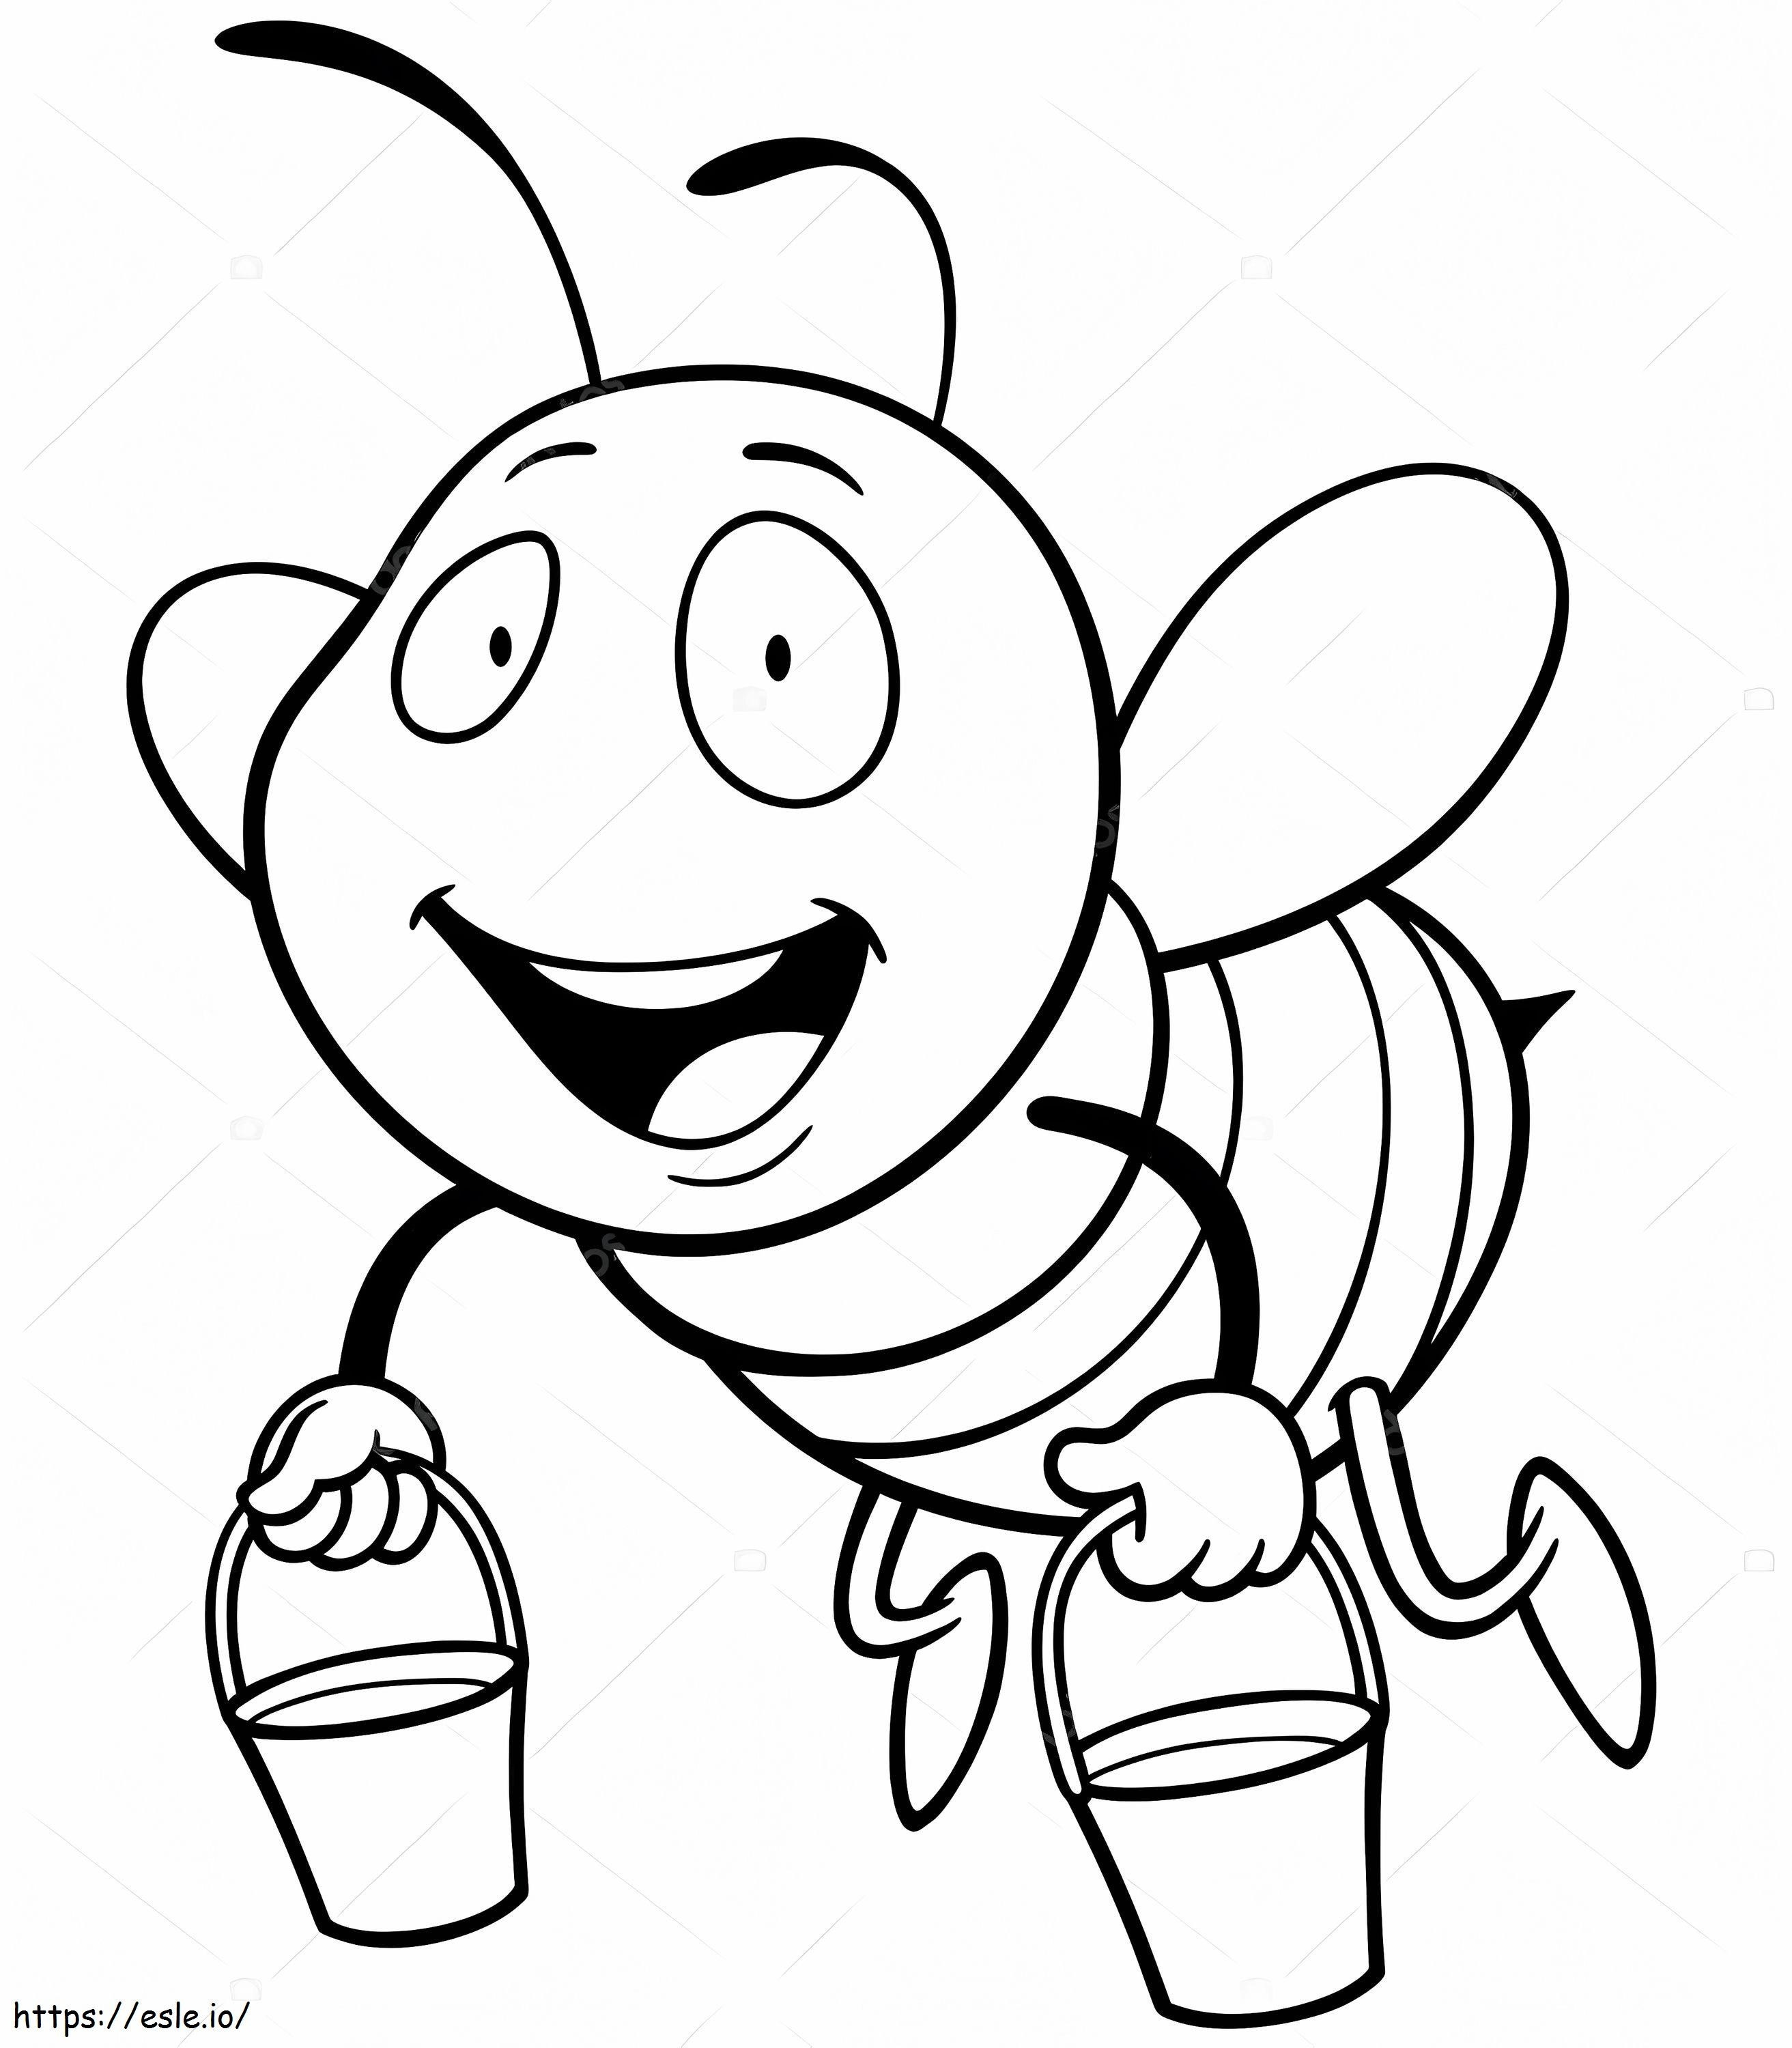 _Depositphotos_78908214 Kolekcje Ilustracji kreskówka pszczoła kolorowanka